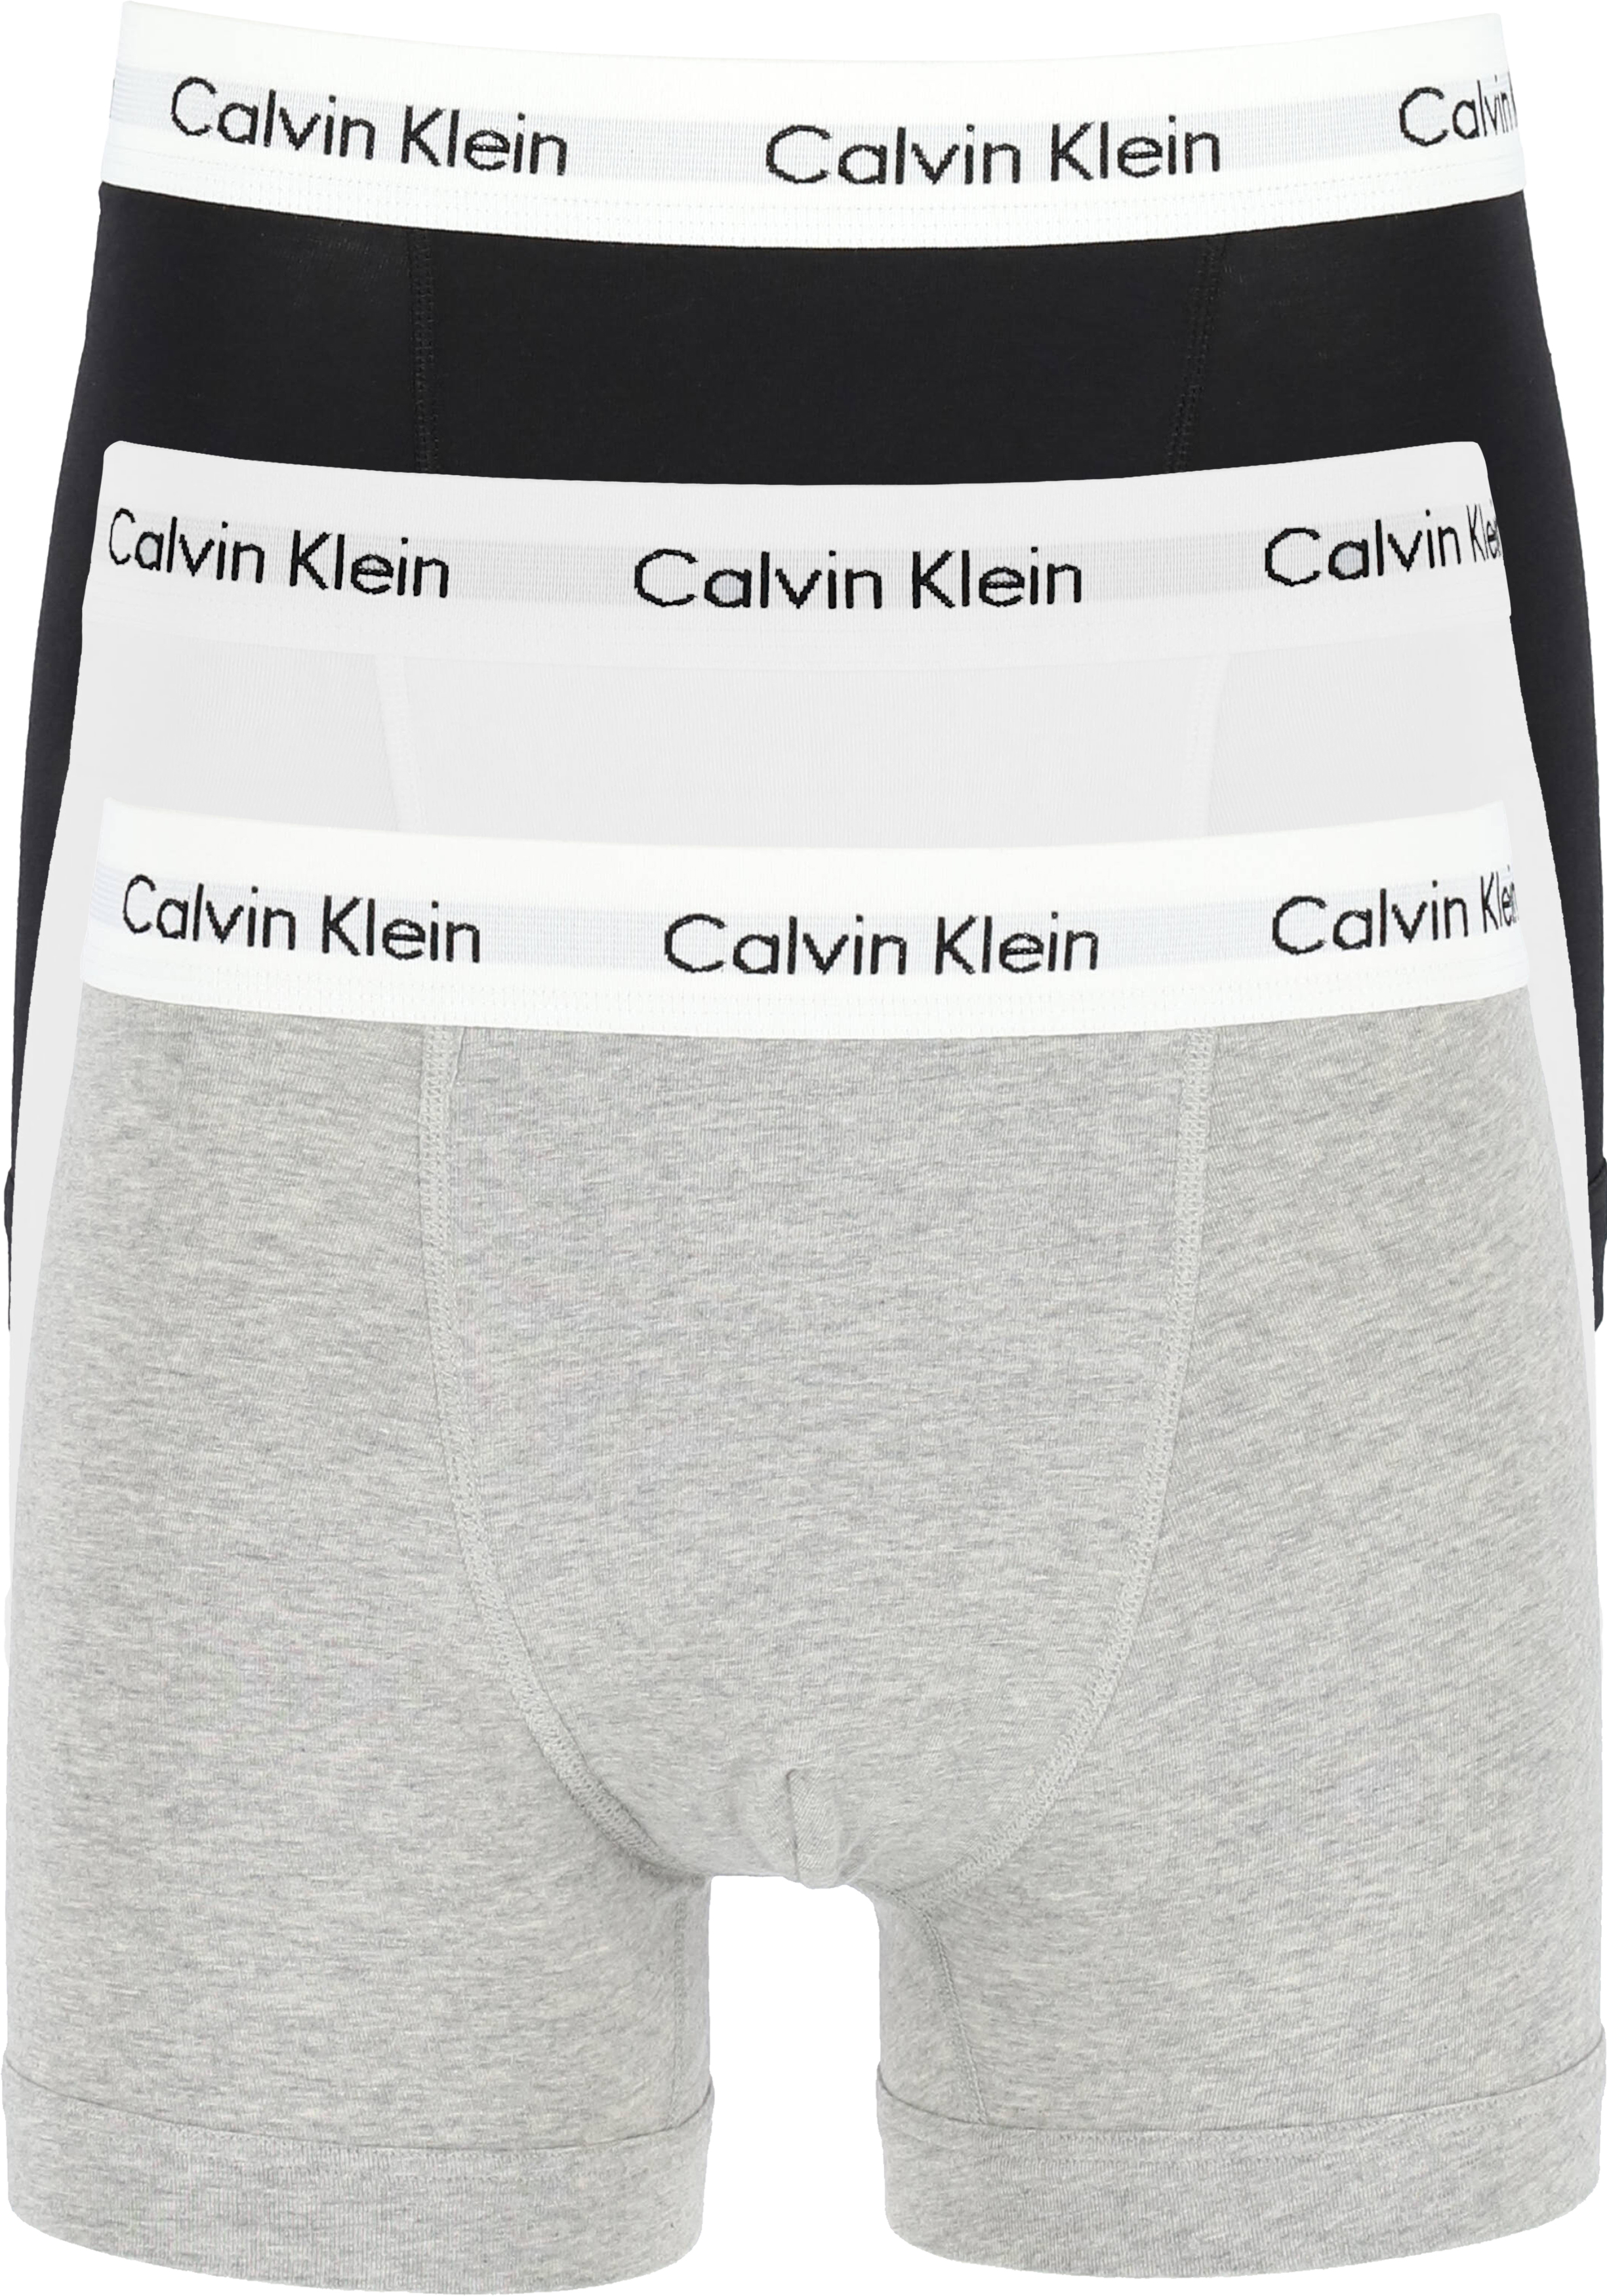 ontwerp verkoper Cataract Calvin Klein Trunks (3-pack), zwart - grijs en wit - Gratis bezorgd